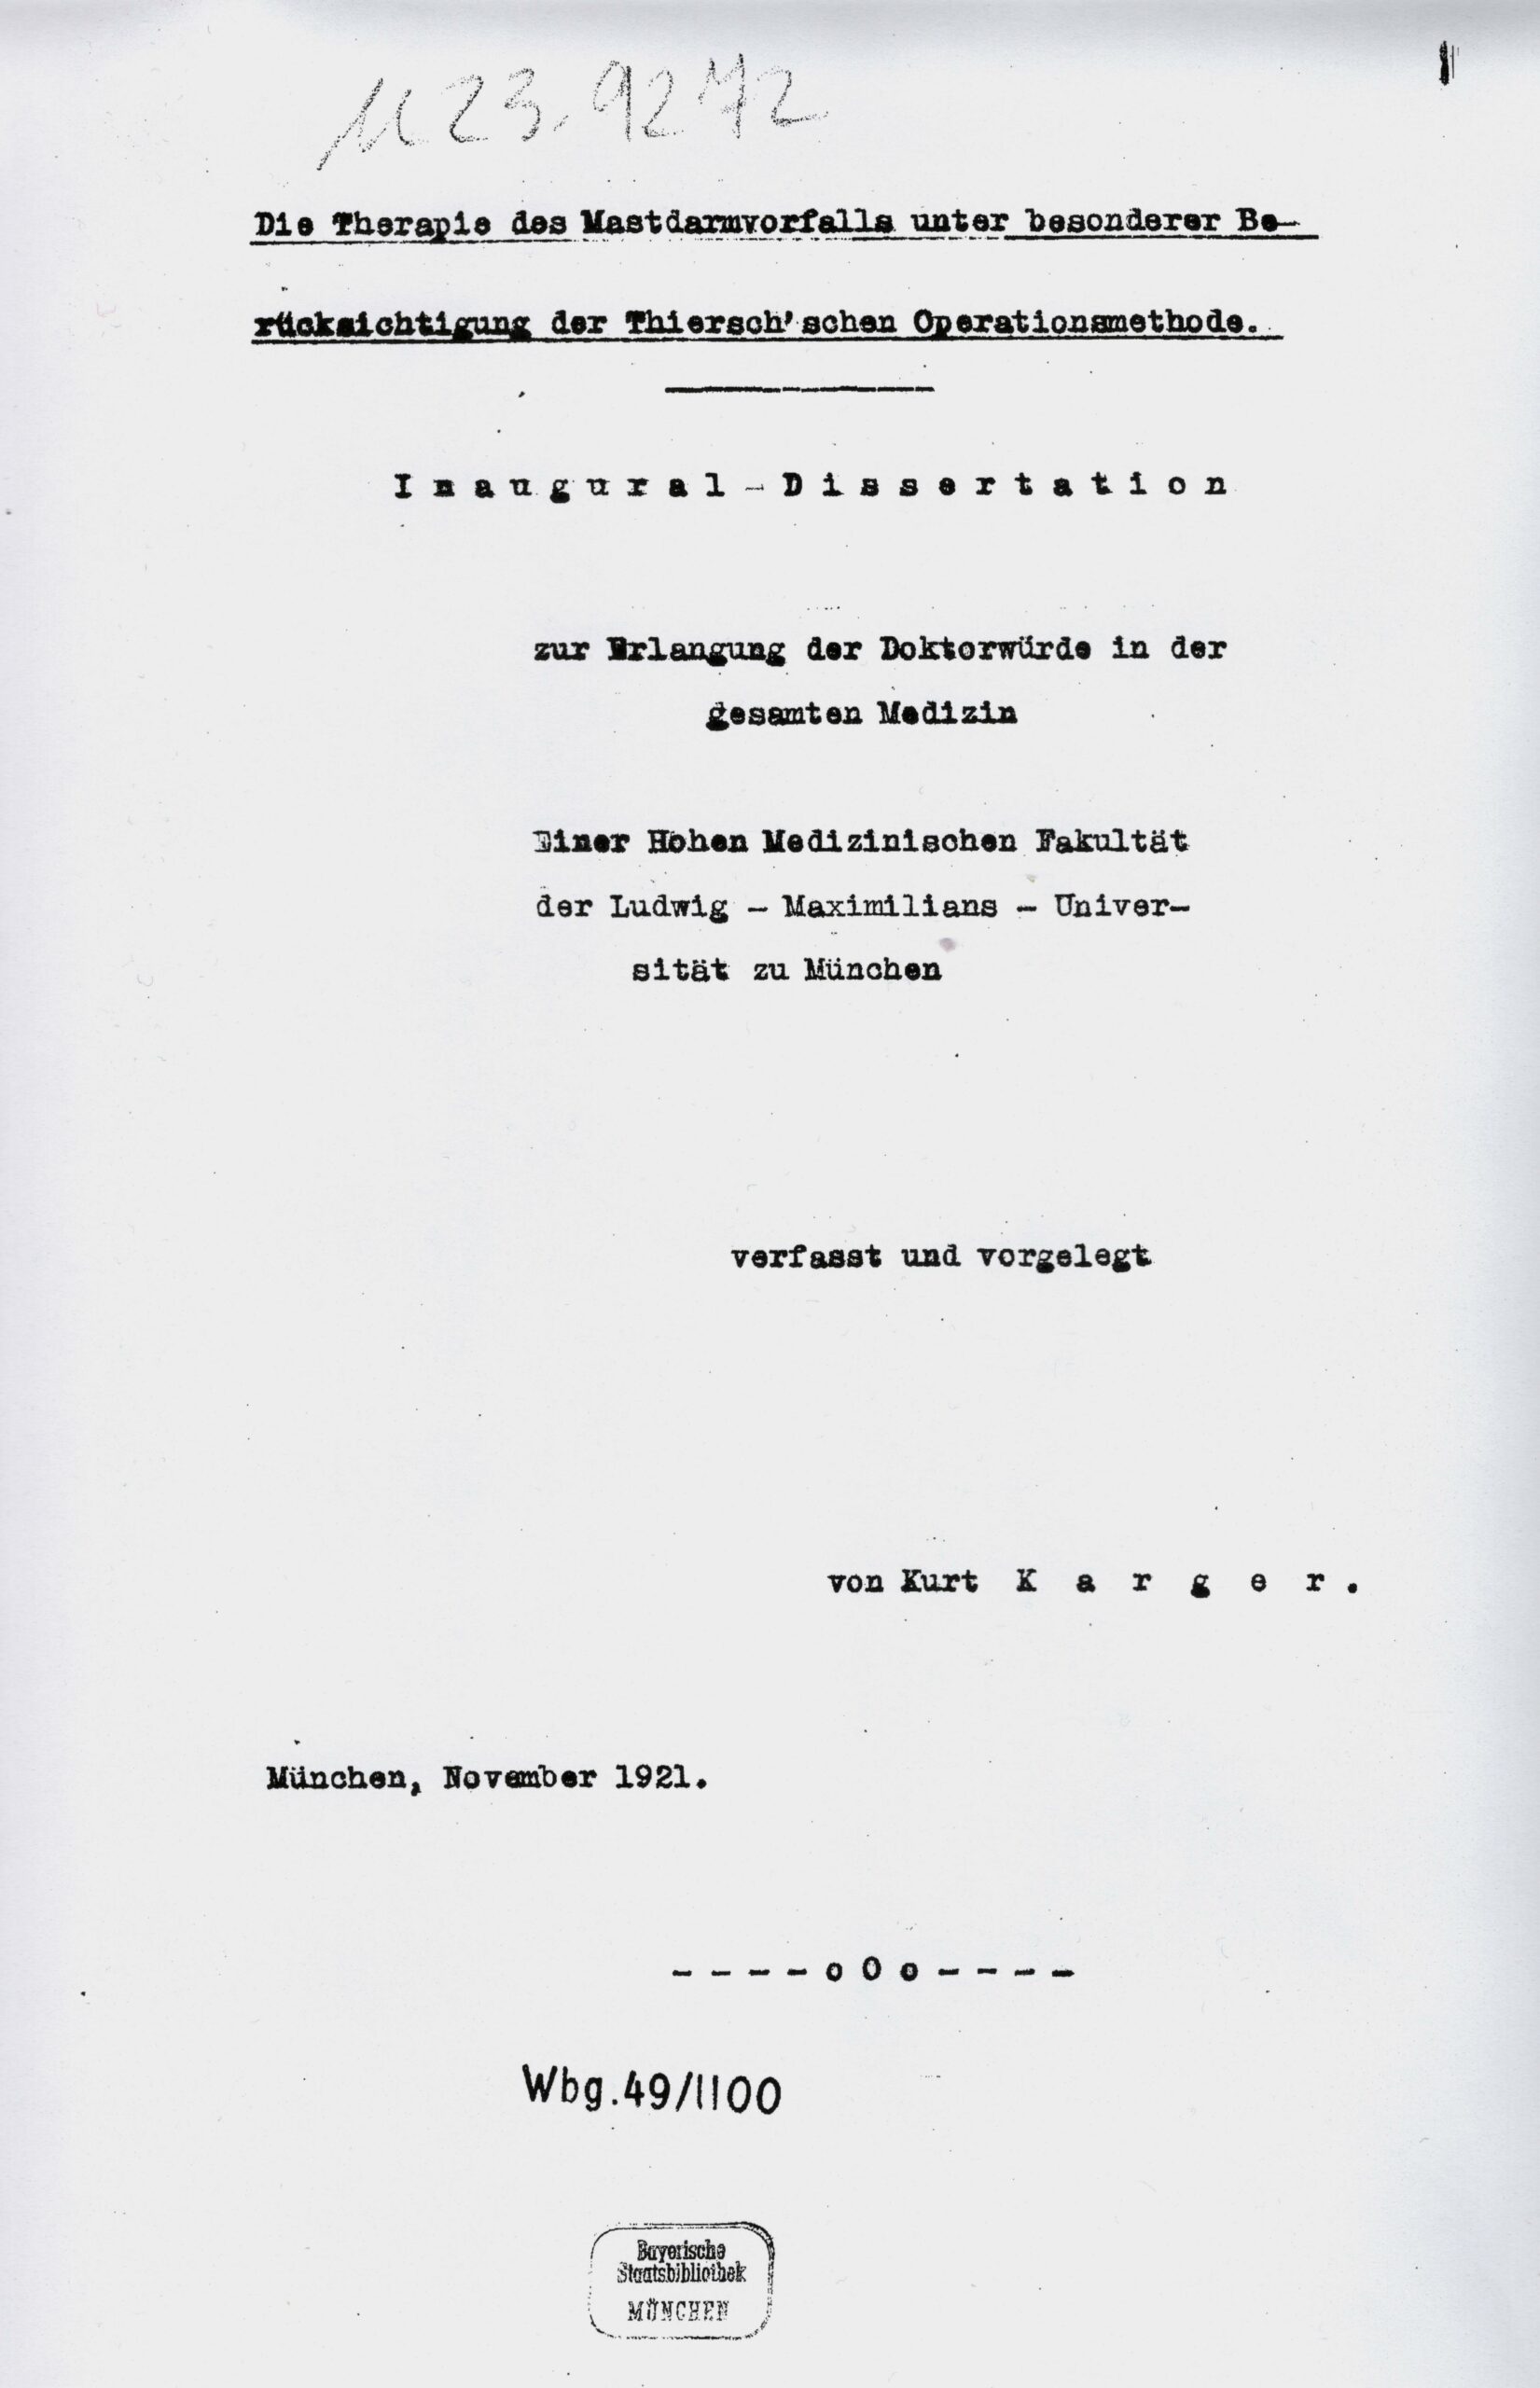 Dissertation, Munich 1921